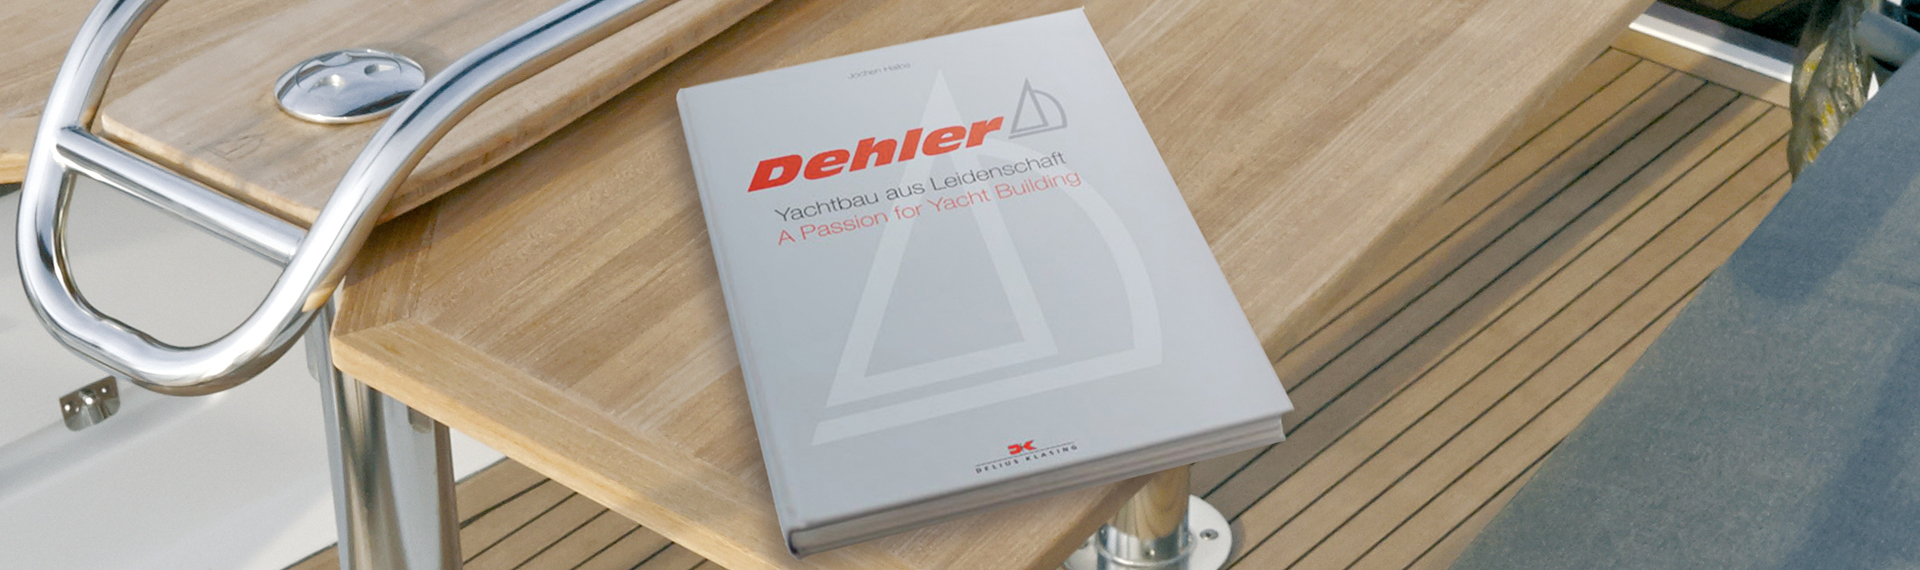 Fünfzig Jahre Dehler Segelboote Hardcover-Buch über die mehr als sechzig produzierten Bootstypen